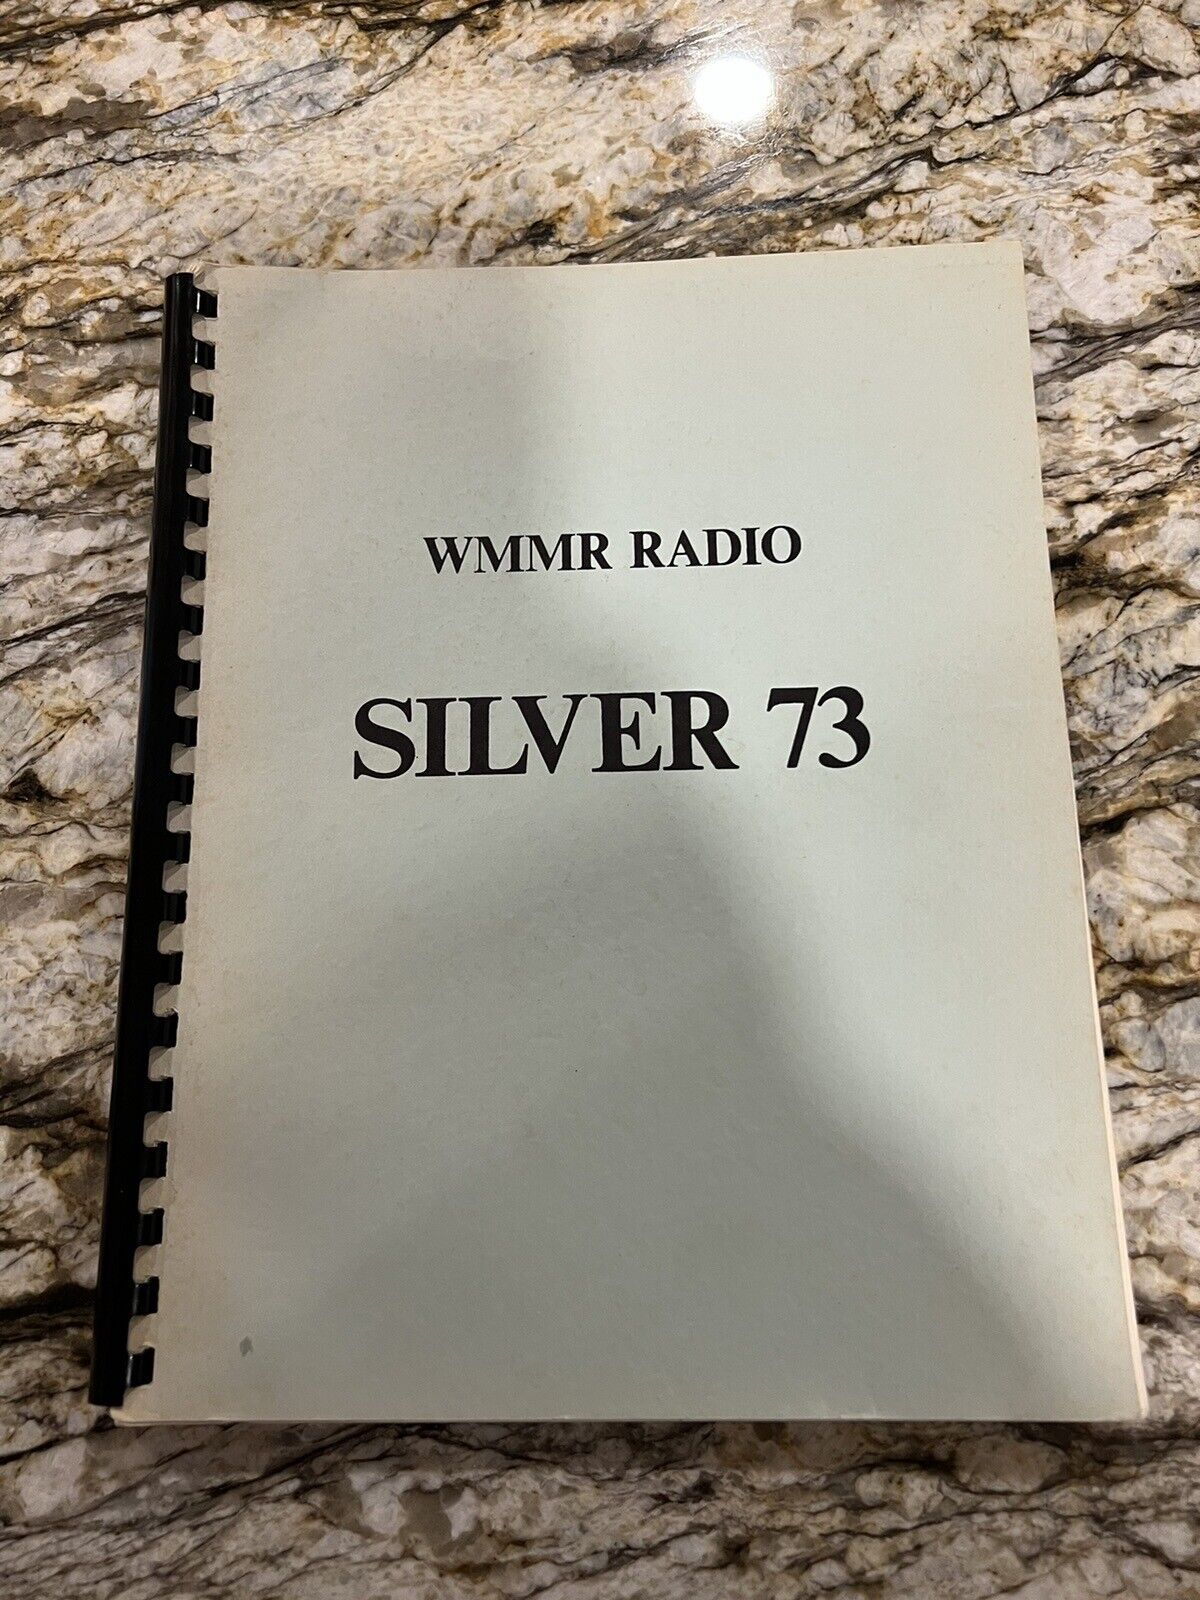 University Minnesota 1973 Student Radio Station WMMR Yearbook 25th Anniversary